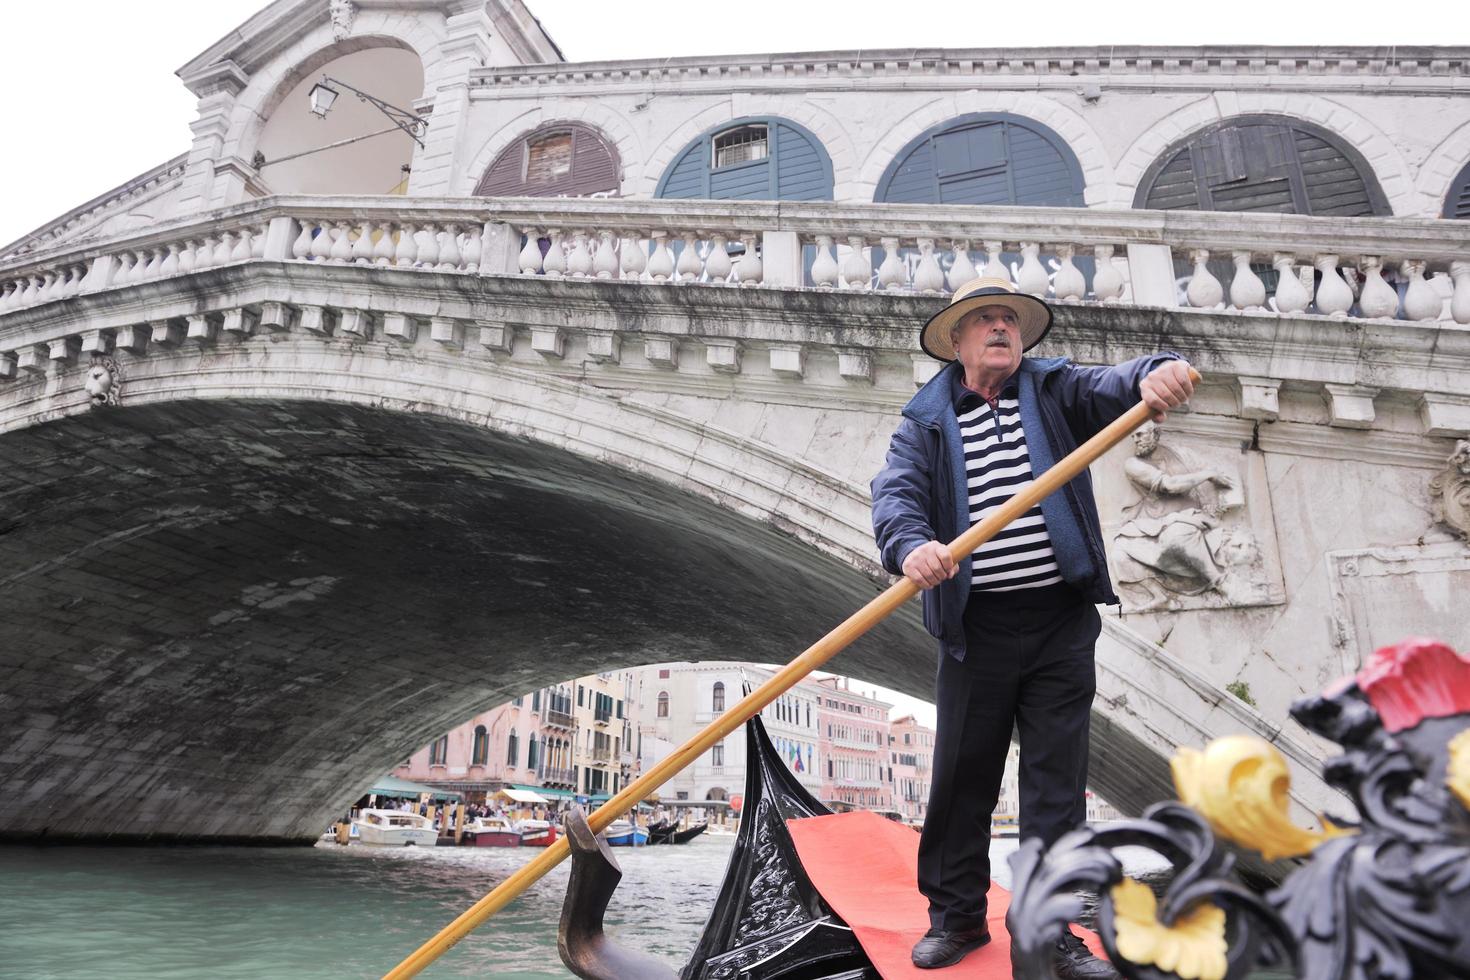 Venedig Italien, gondol förare i stor kanal foto